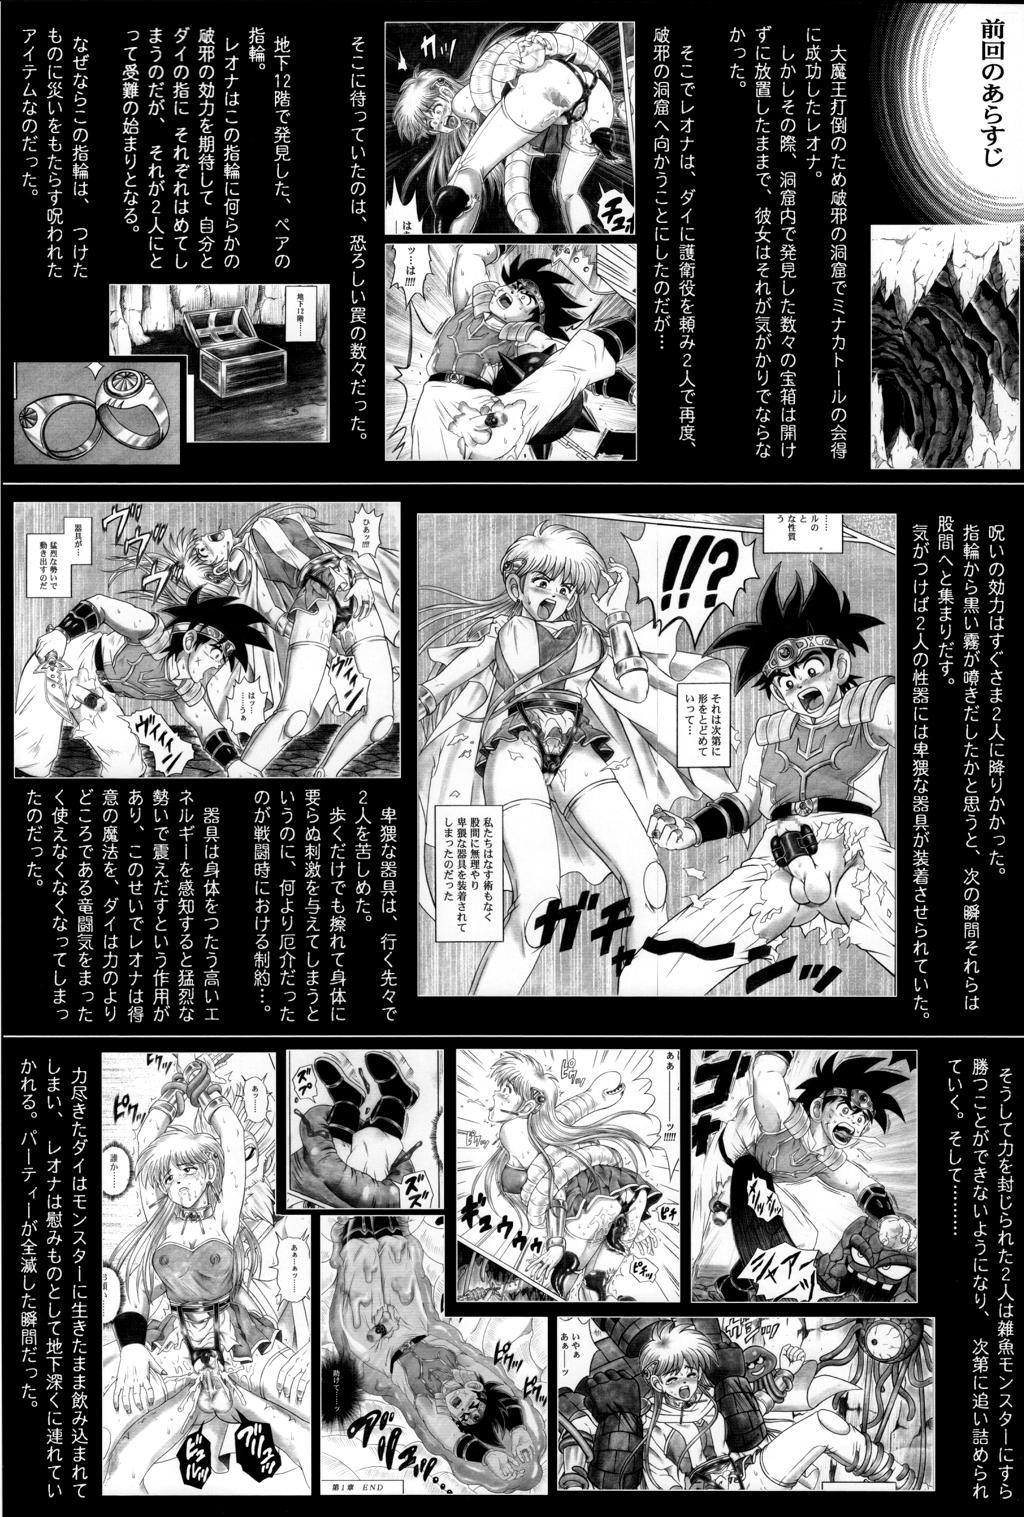 Blow Job (C71) [Cyclone (Reizei, Izumi)] STAR TAC IDO ~Youkoso Haja no Doukutsu e~ Dai 4 Shou (Dragon Quest Dai no Daibouken) - Dragon quest dai no daibouken Brasil - Page 2